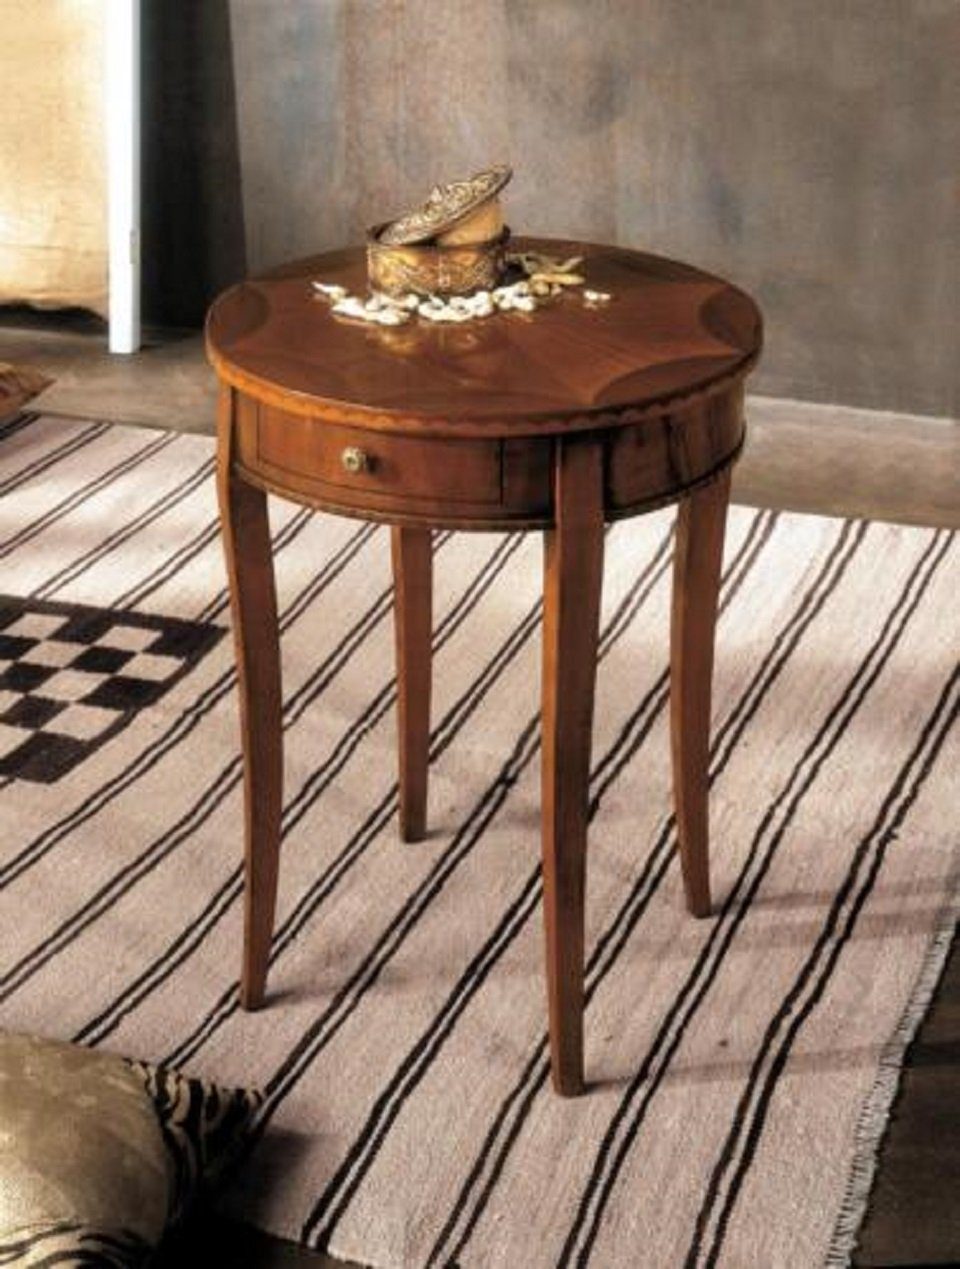 JVmoebel Beistelltisch Design Tisch Wohnzimmertisch Möbel Beistelltisch Tische Couchtisch (Beistelltisch), Made in Europe